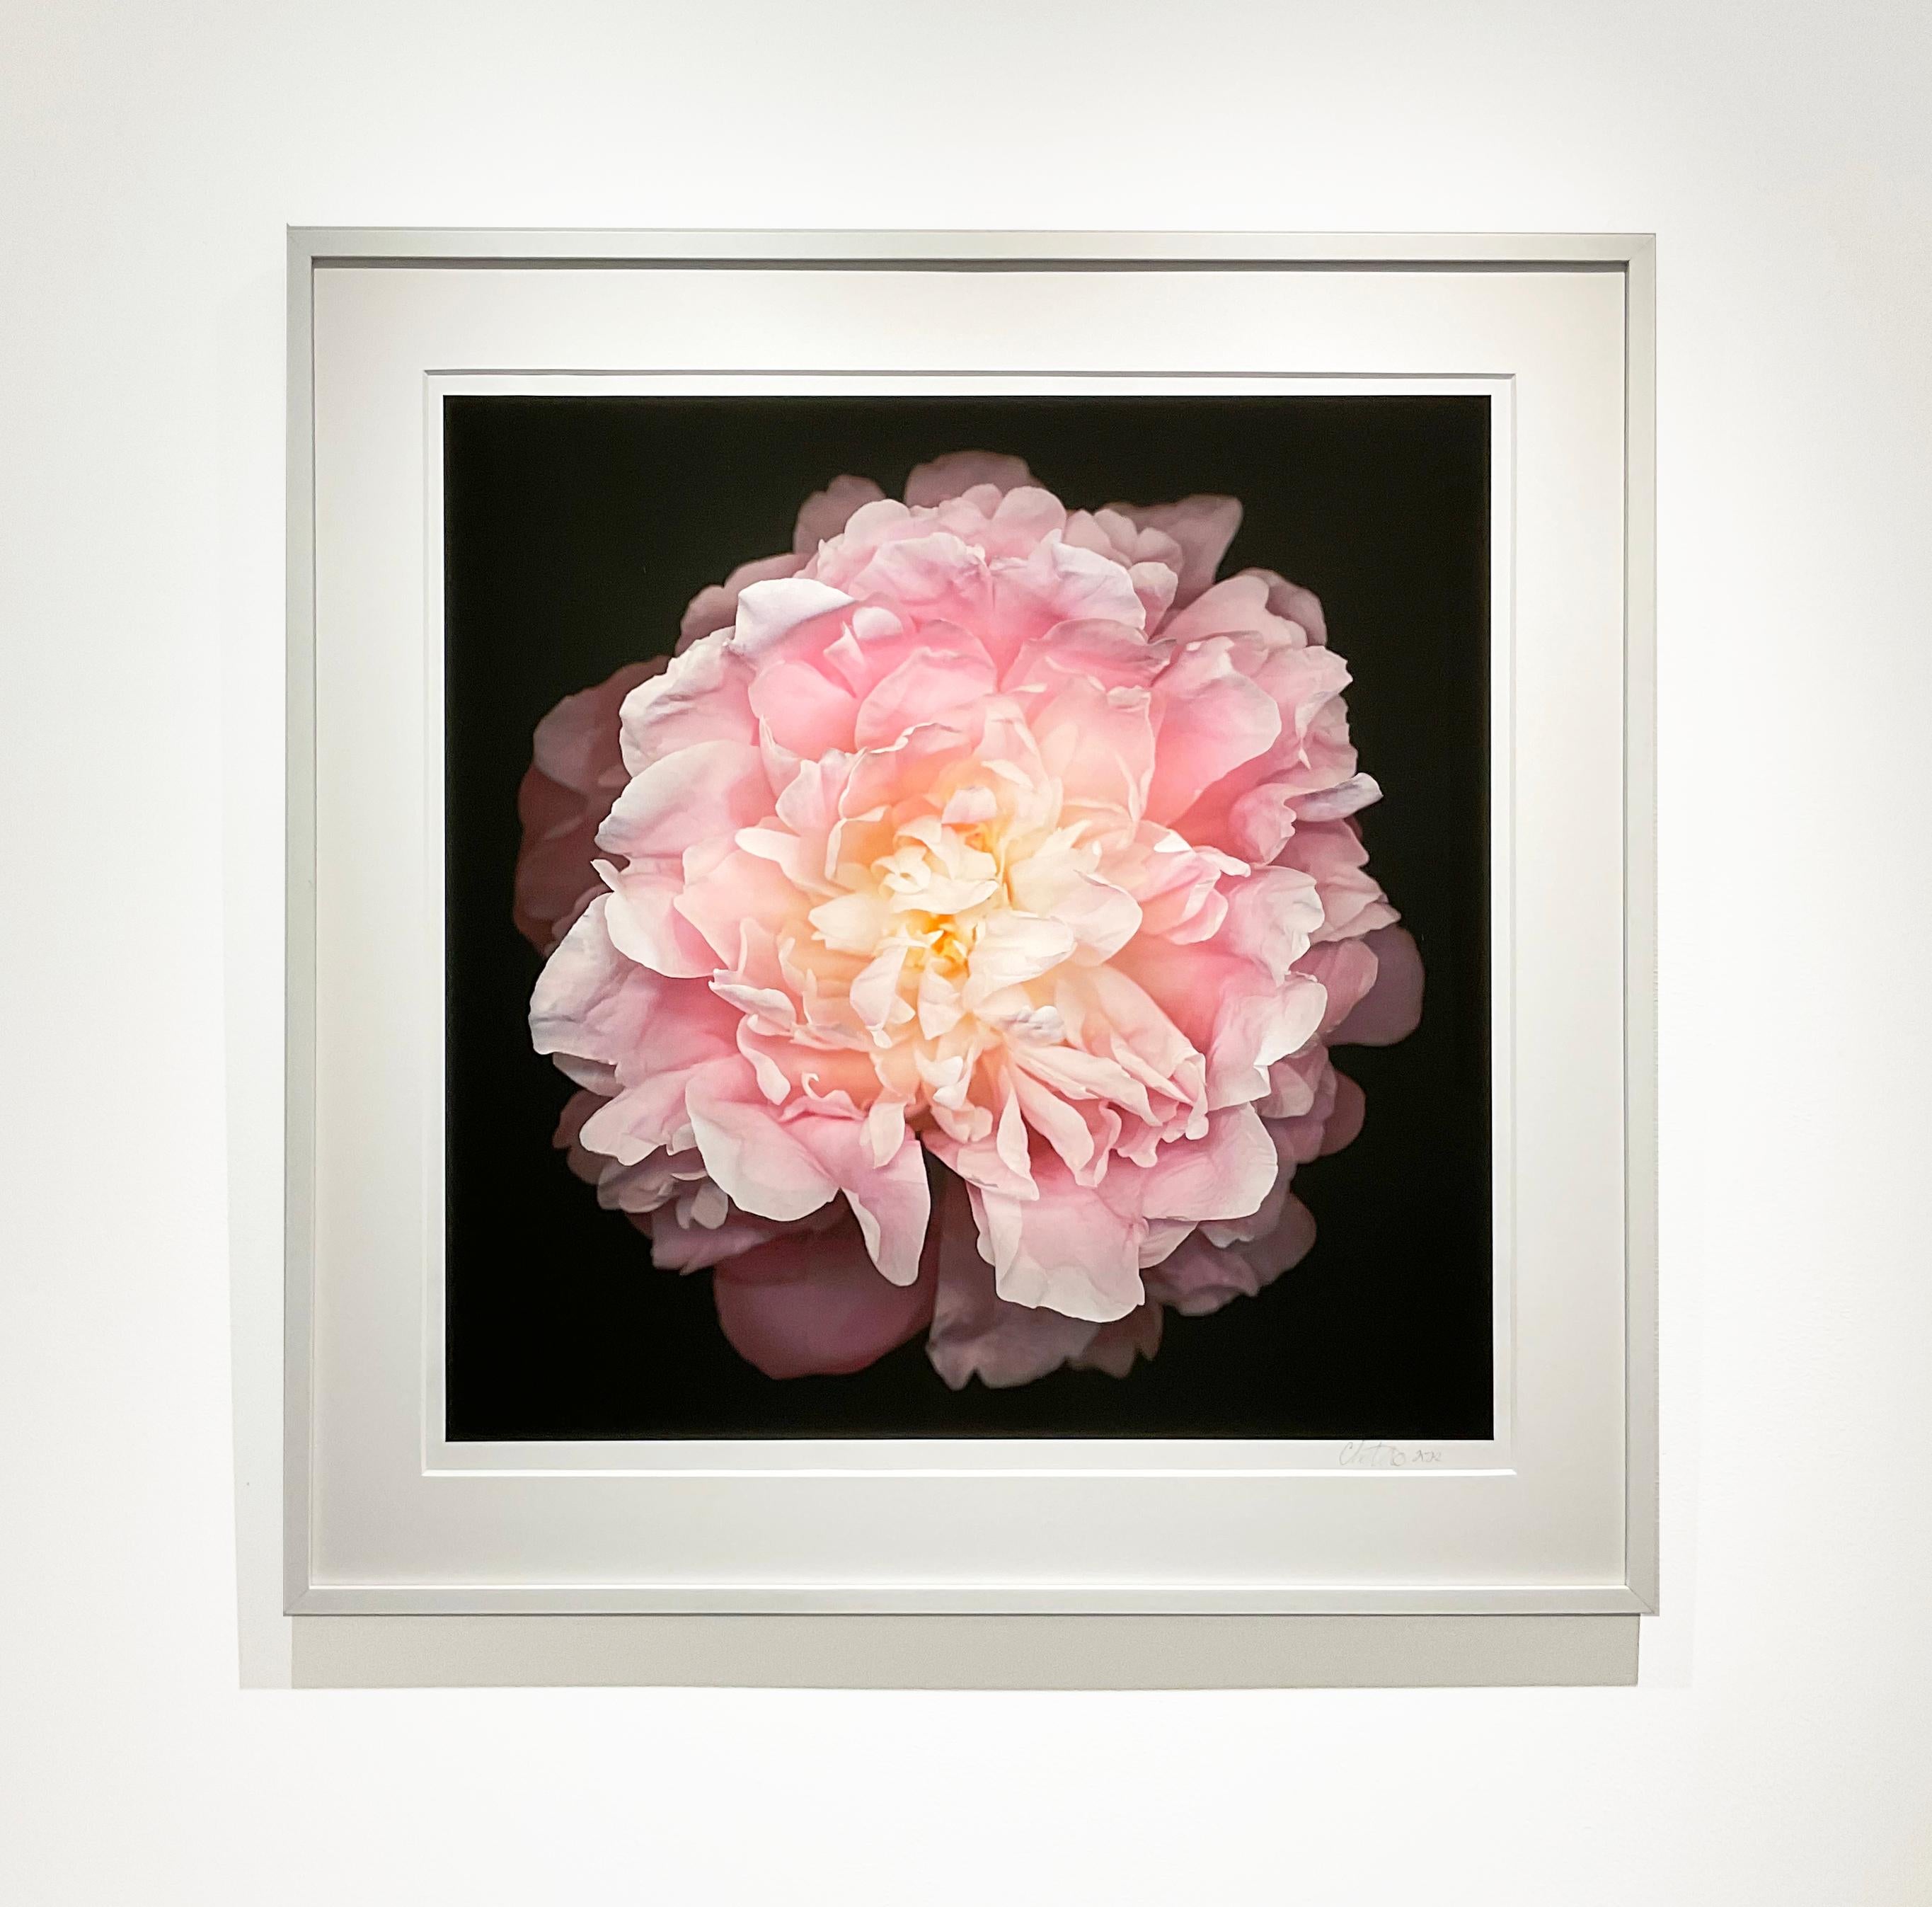 Nr. 47 (Fragmentierte Blumenstilllebenfotografie einer rosa Pfingstrose auf Schwarz)  (Zeitgenössisch), Photograph, von Chad Kleitsch